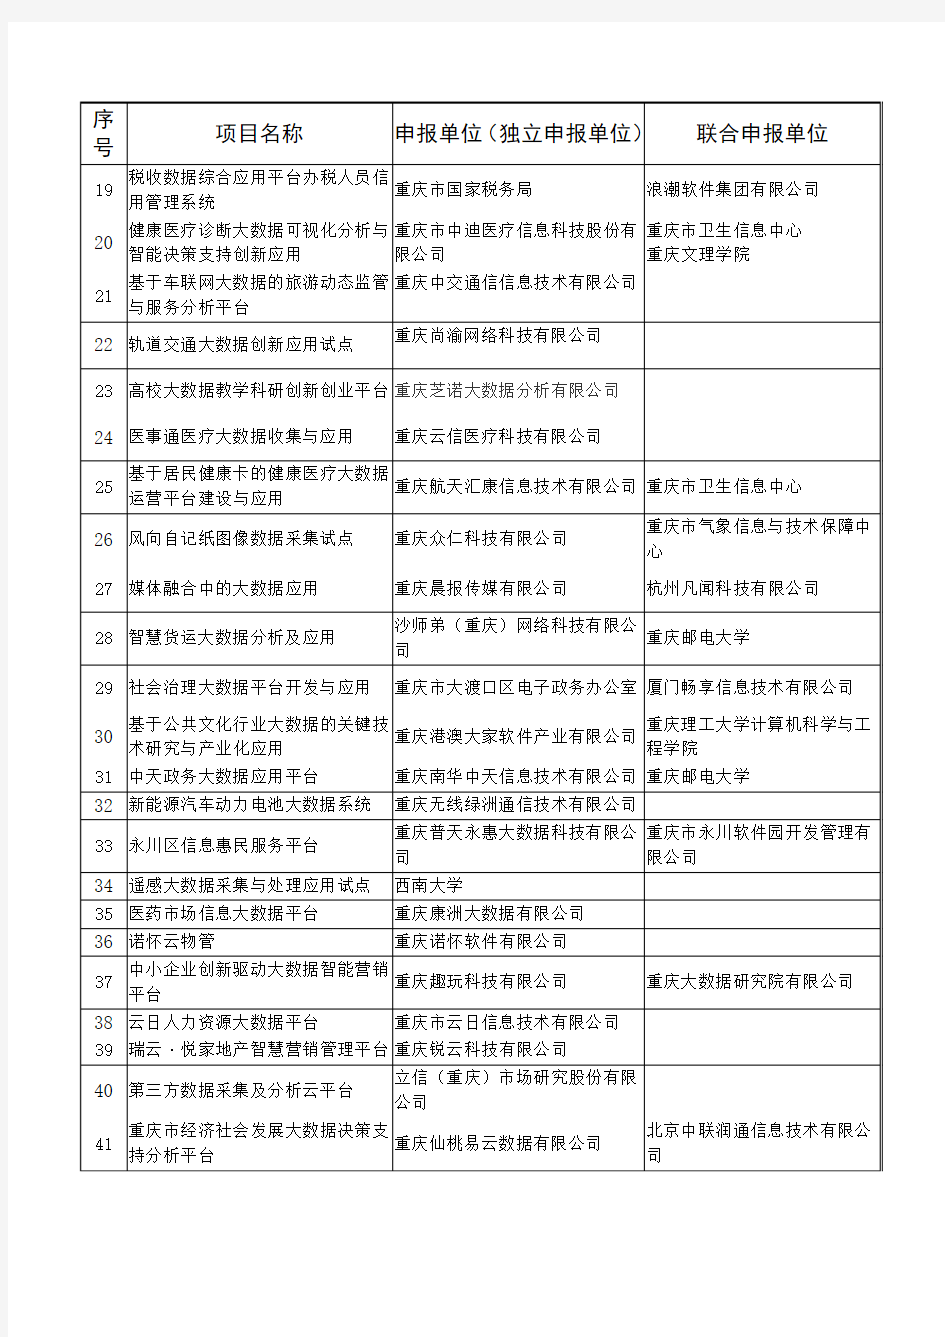 2017年重庆市大数据创新应用试点项目公示名单